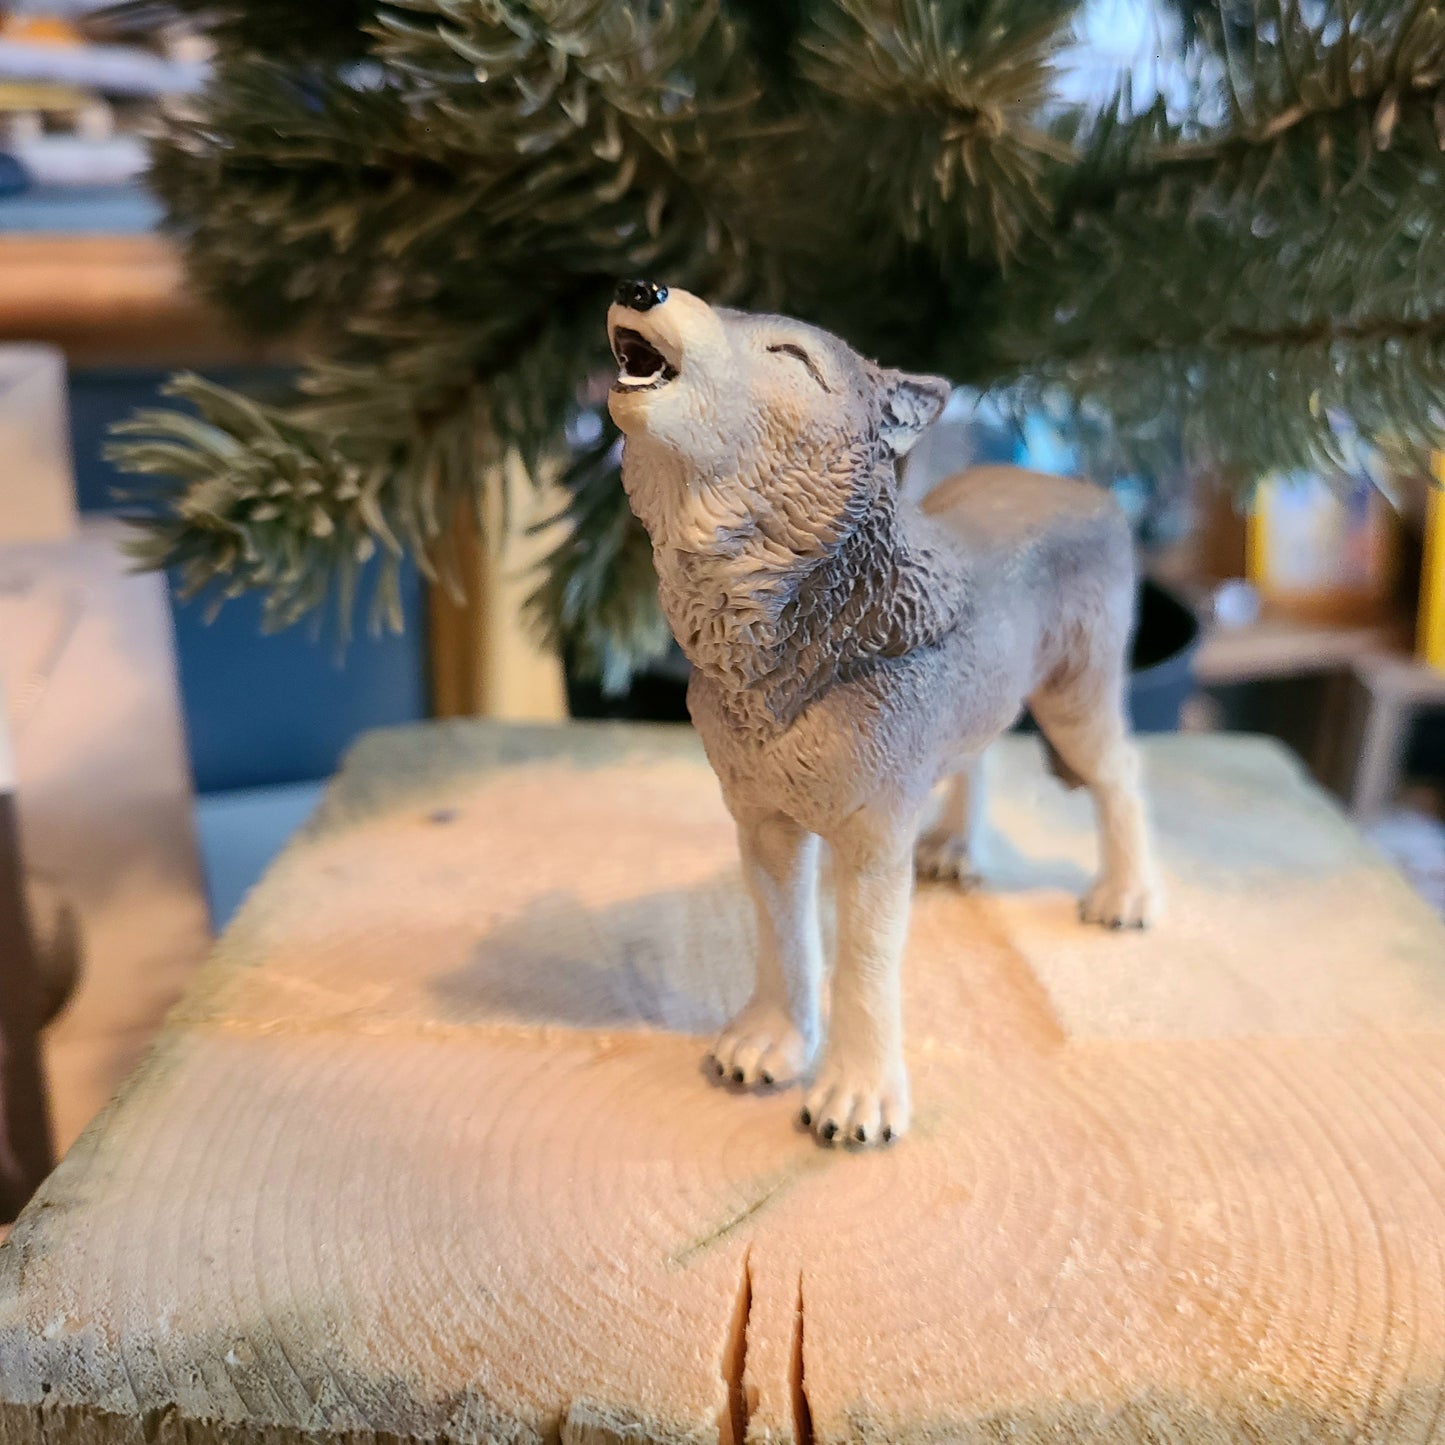 Wolf-Spielzeug/Figur – Grauer Welpe